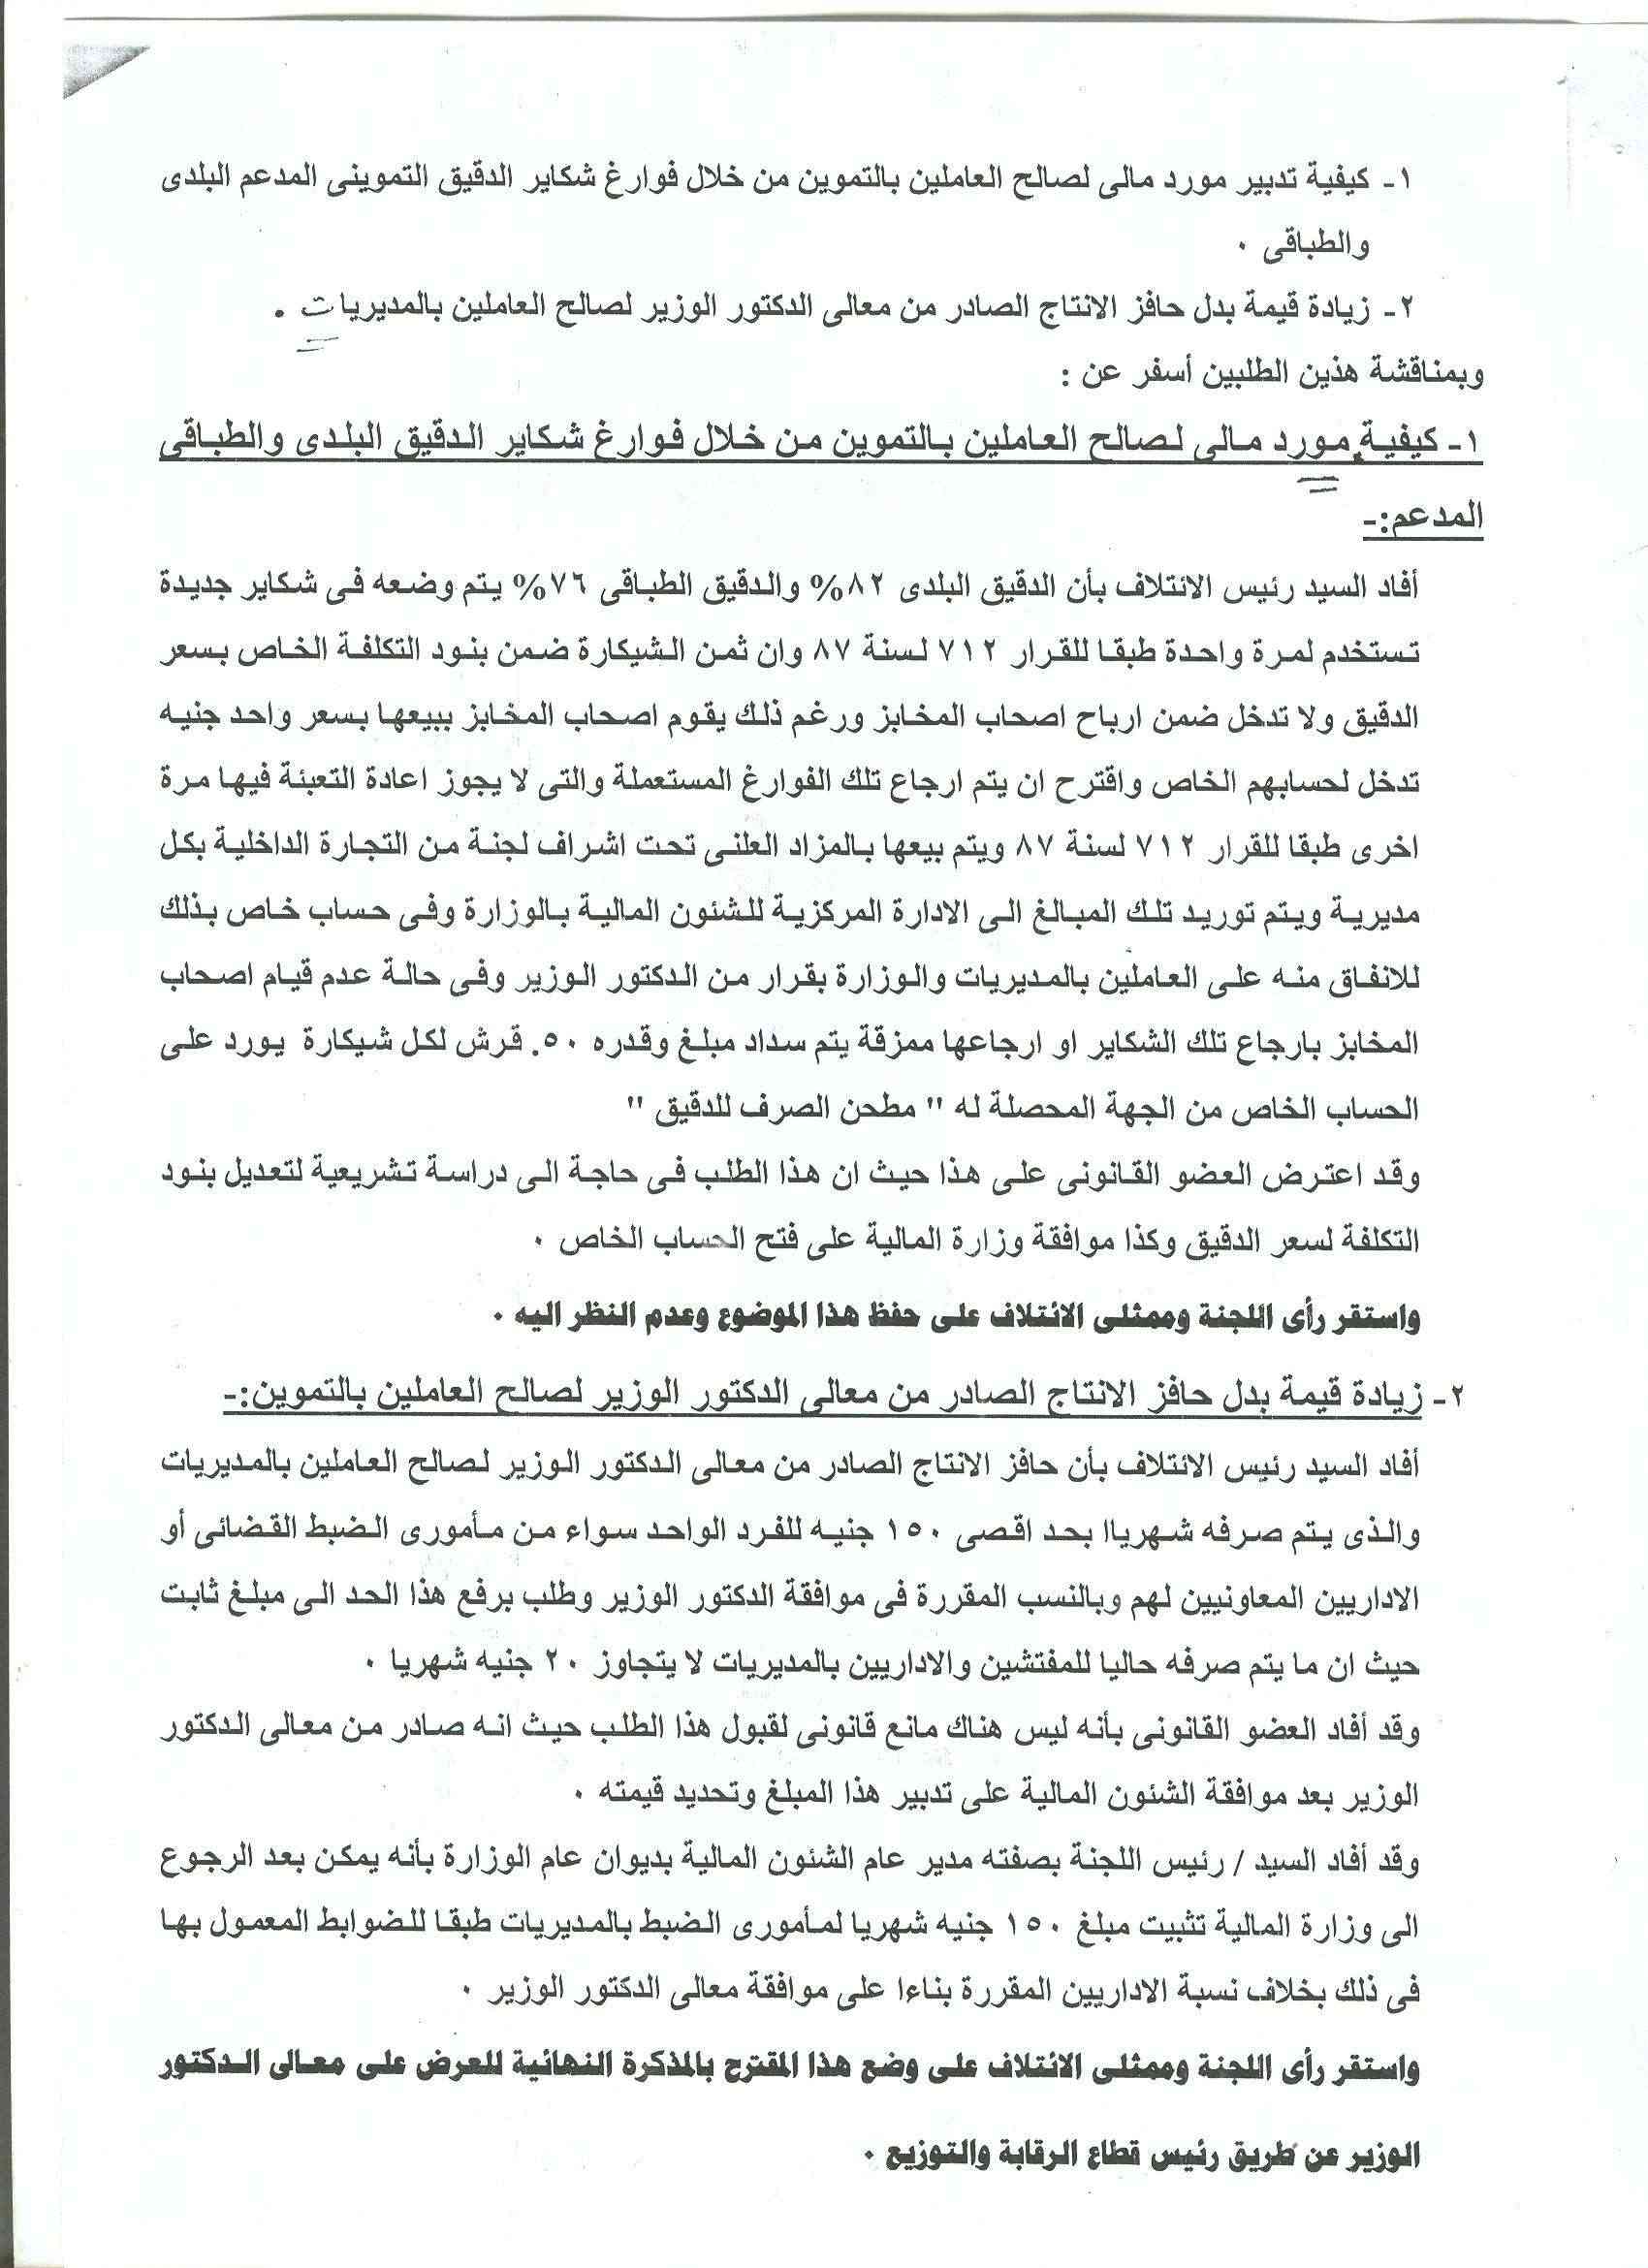 أعمال لجنة الإئتلاف العام للعاملين بتموين مصر بالوزاره خلال شهر فبراير 2012 - صفحة 2 6-210